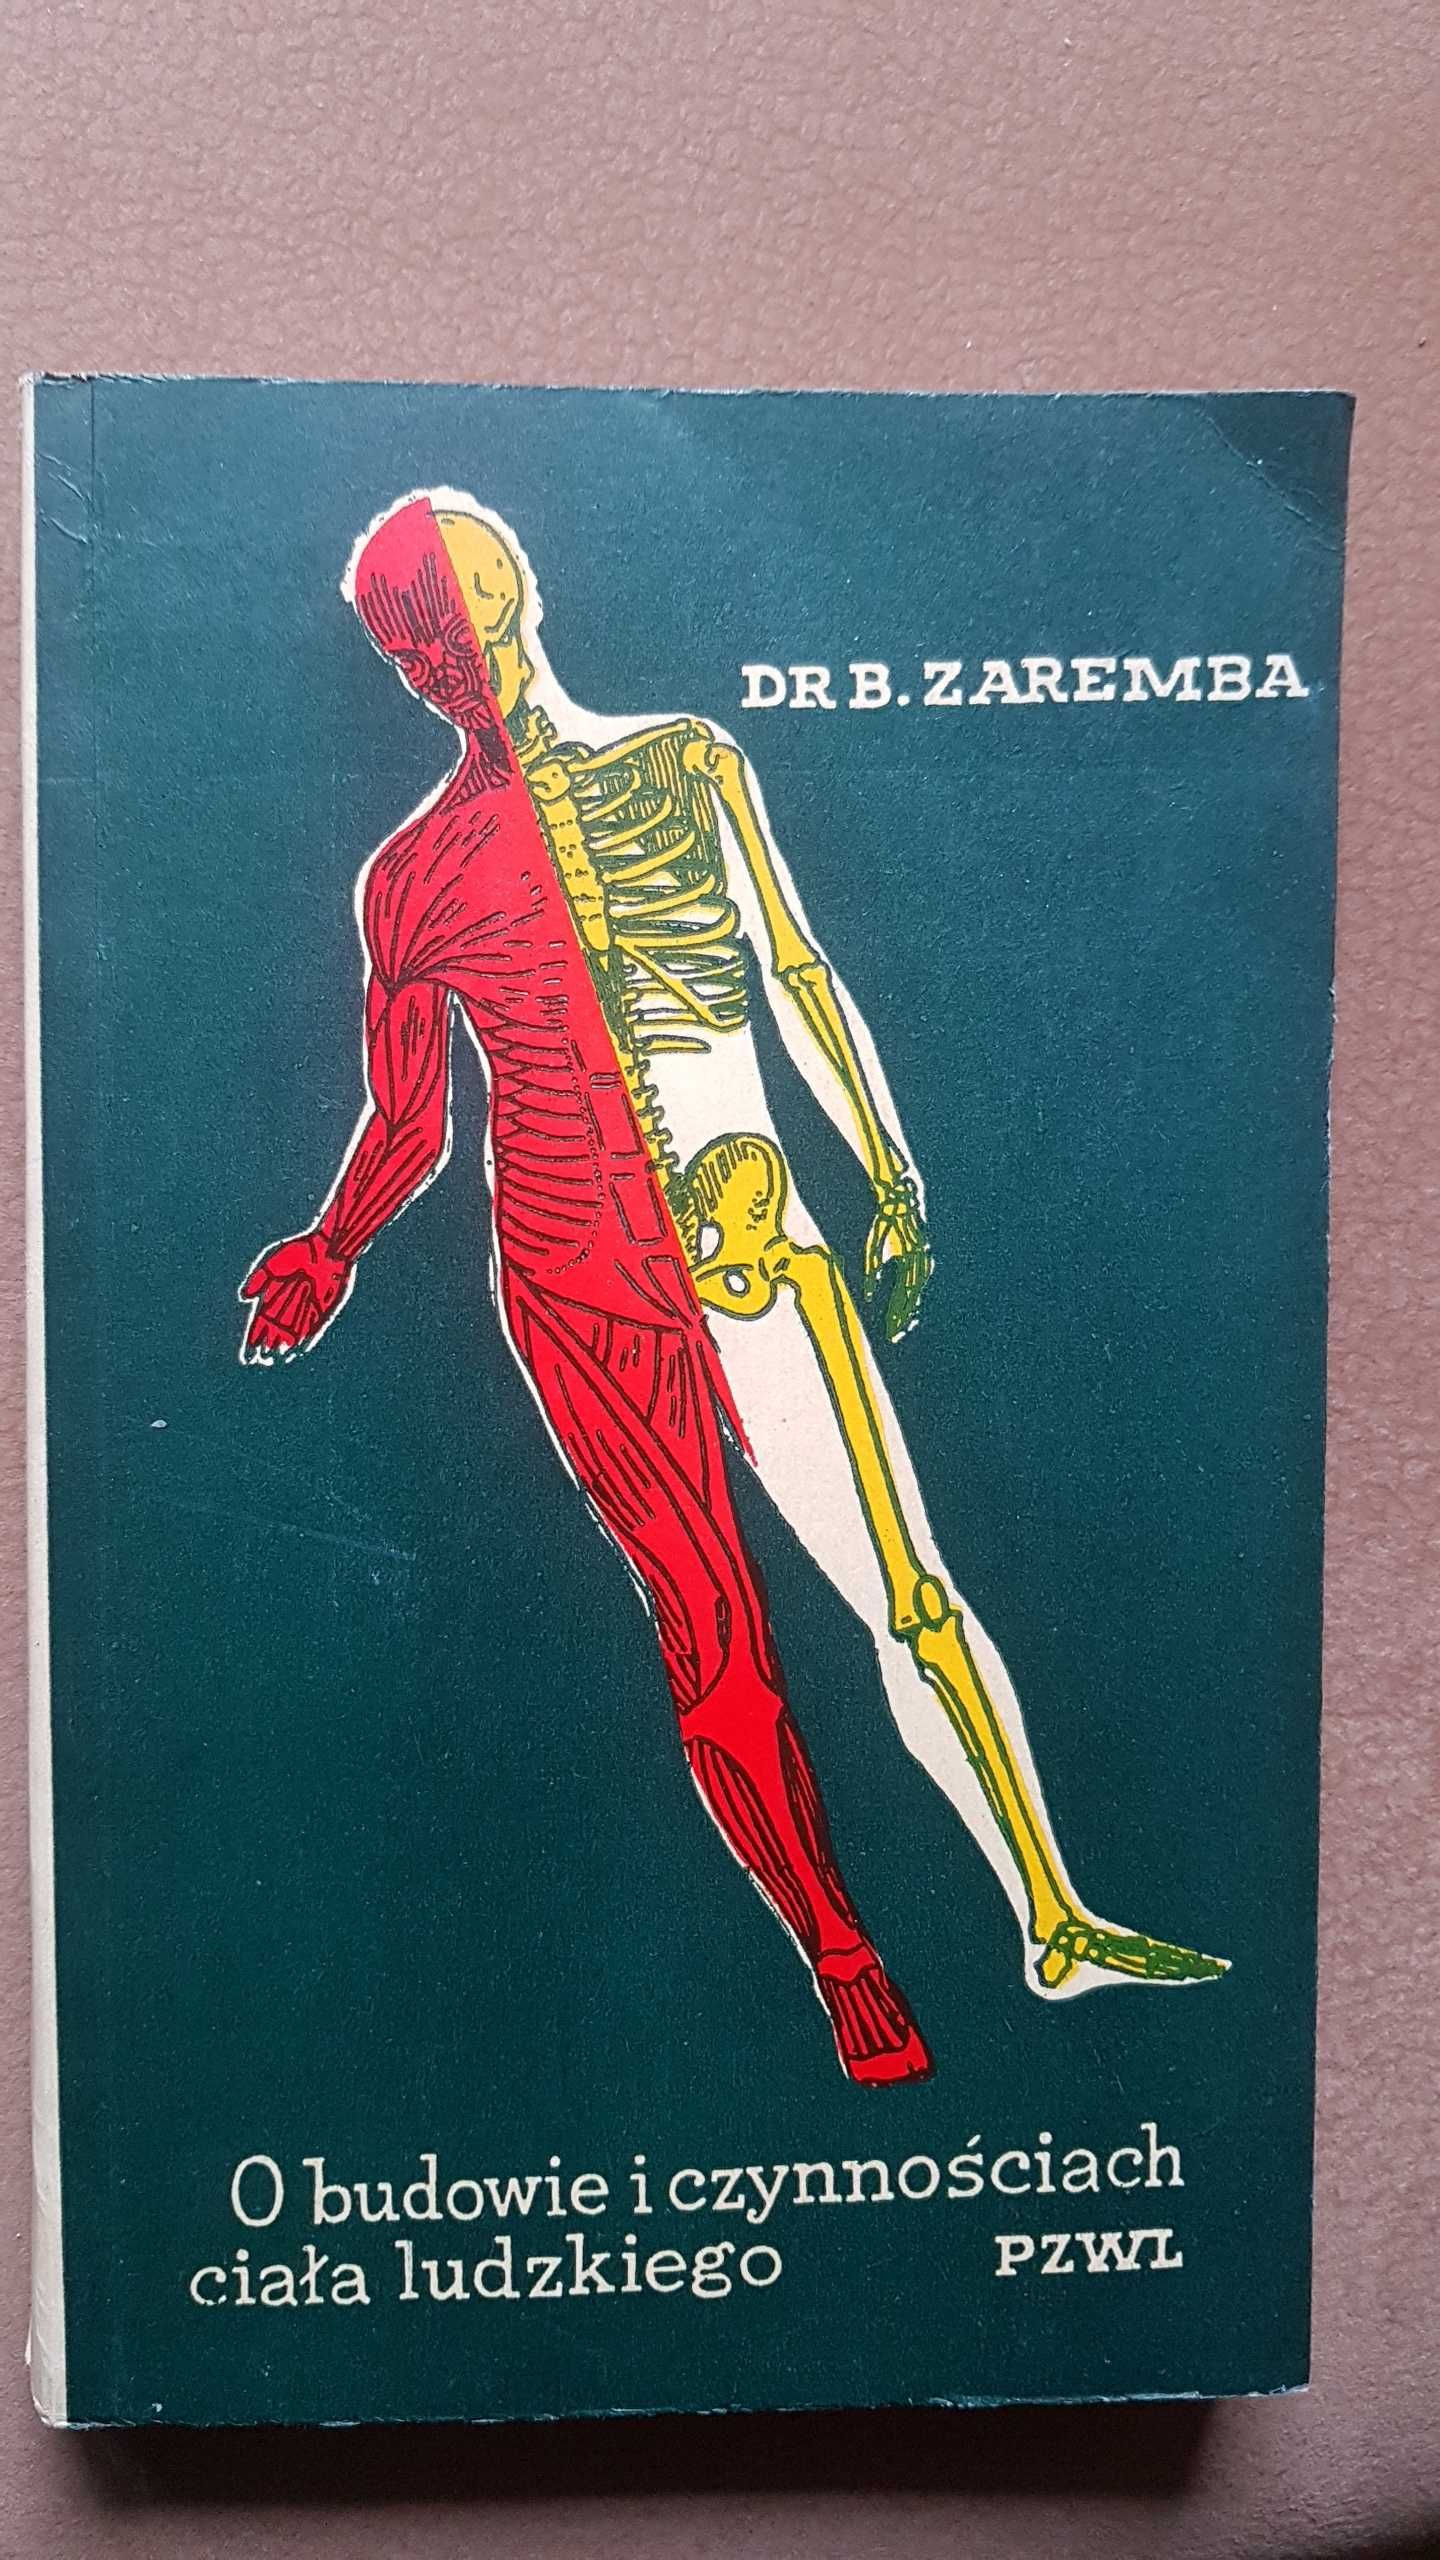 O budowie i czynnościach ciała ludzkiego dr B.Zaremba